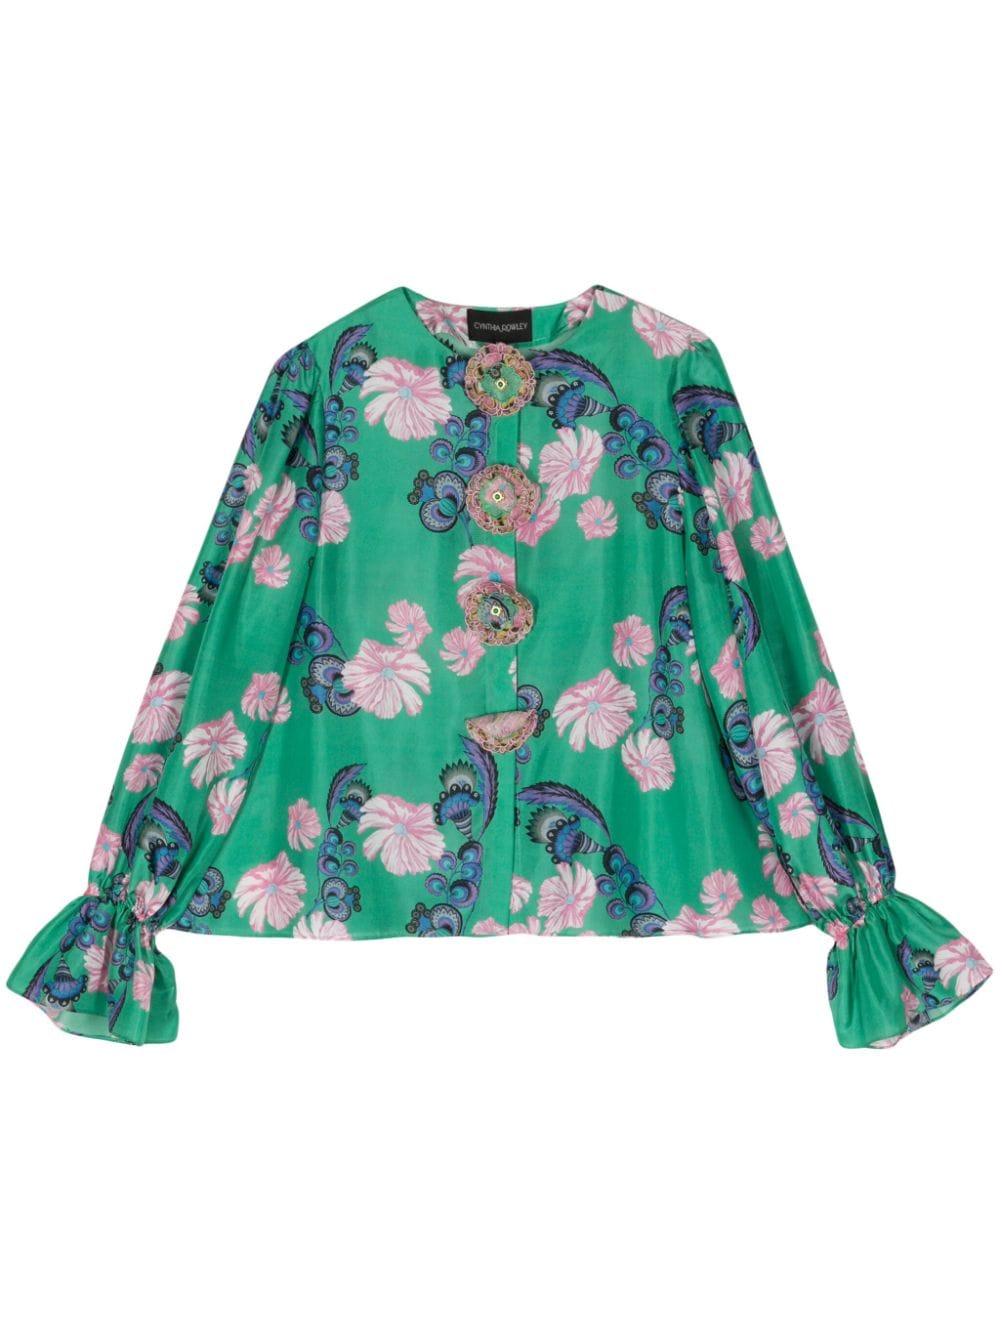 Eden floral cotton blouse